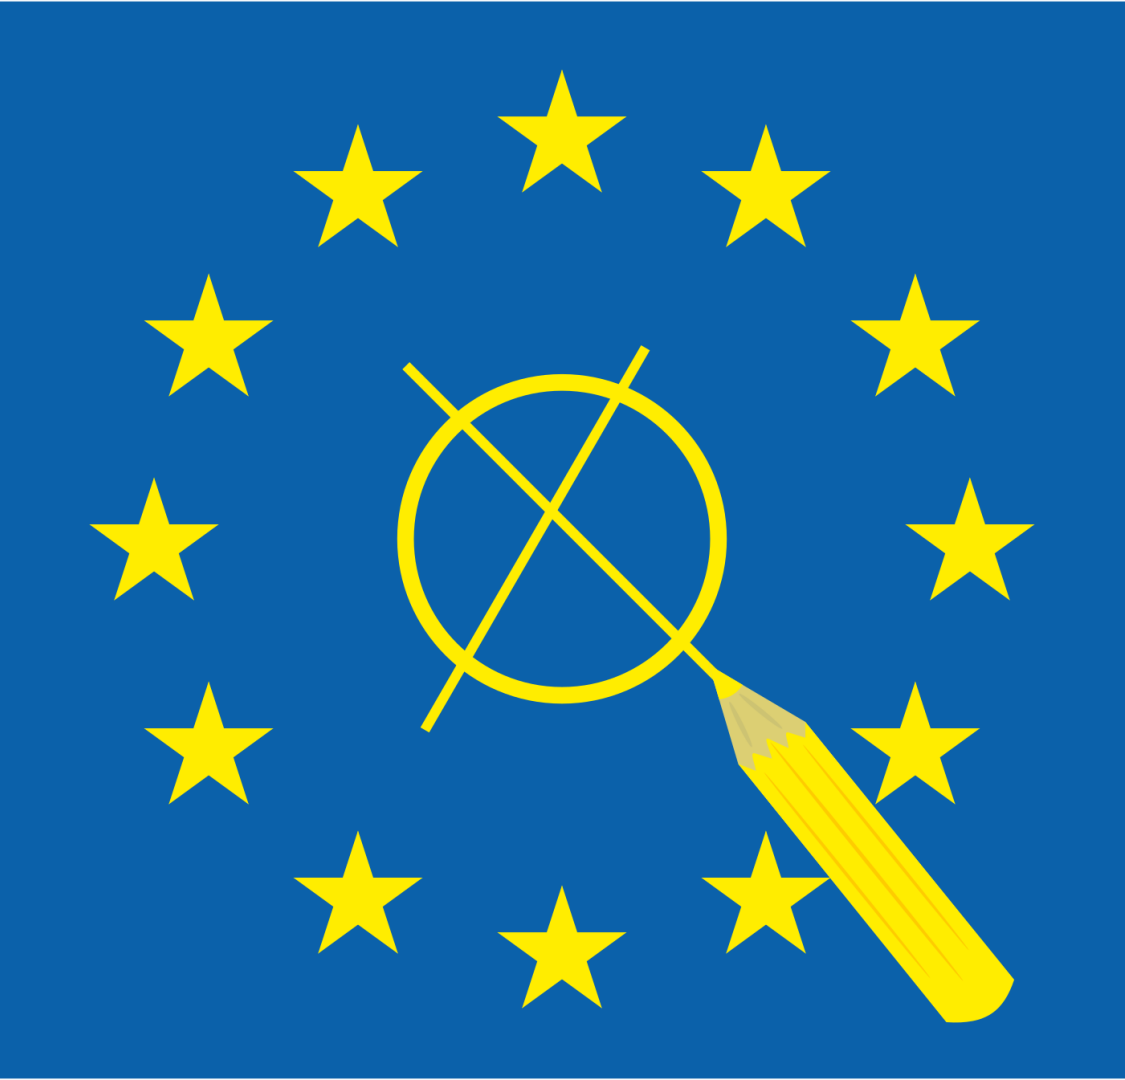 europawahl